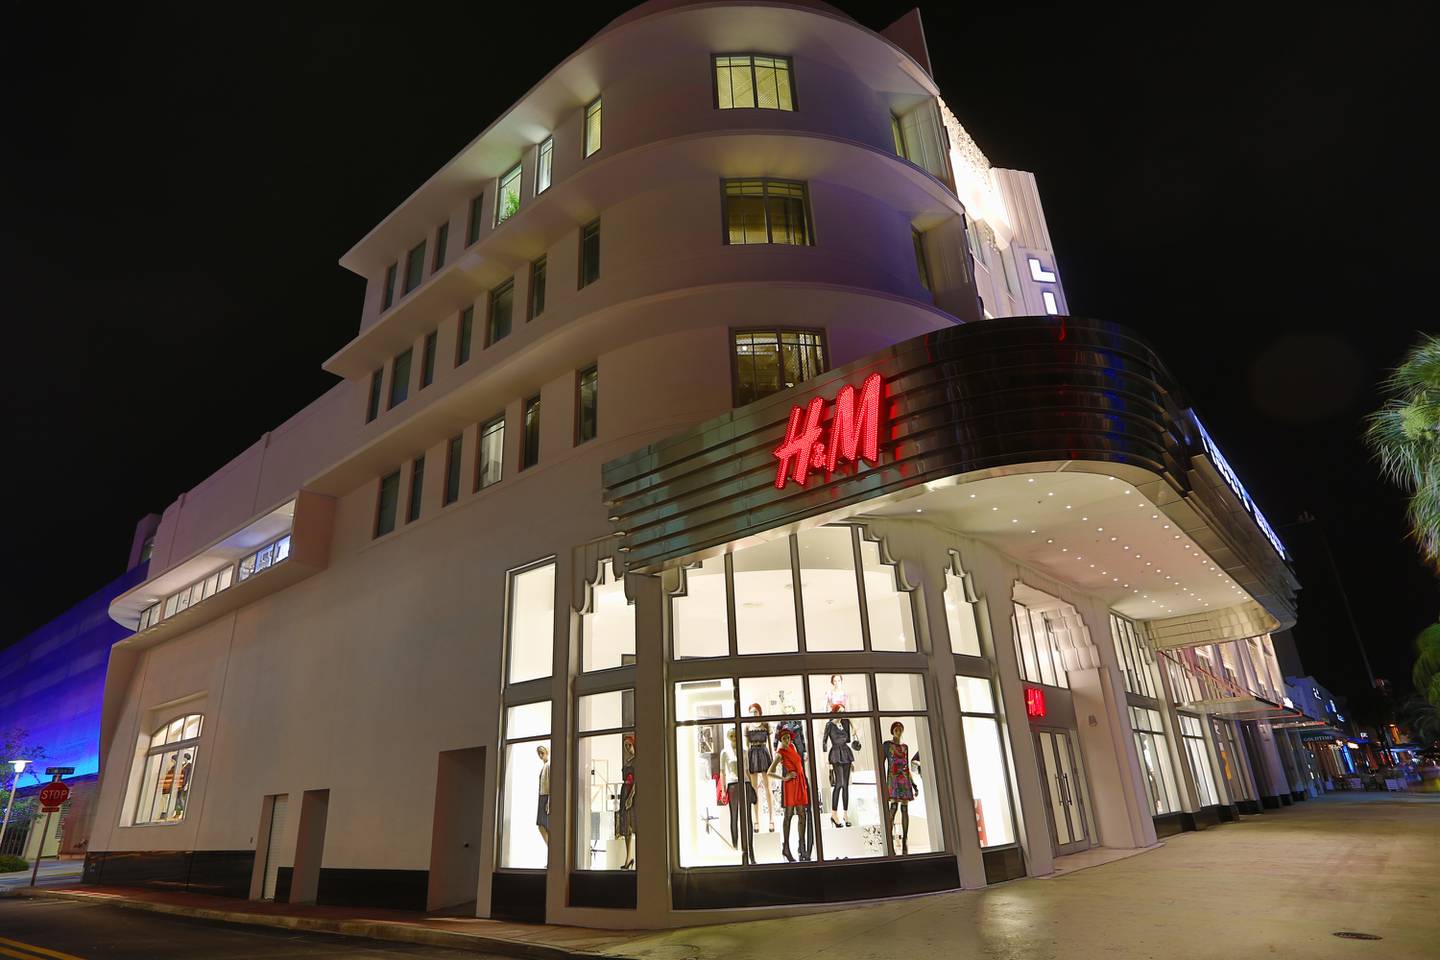 H&M anunció que abrirá su primera tienda en el país el próximo año mediante franquicia, informó este jueves 30 de setiembre.